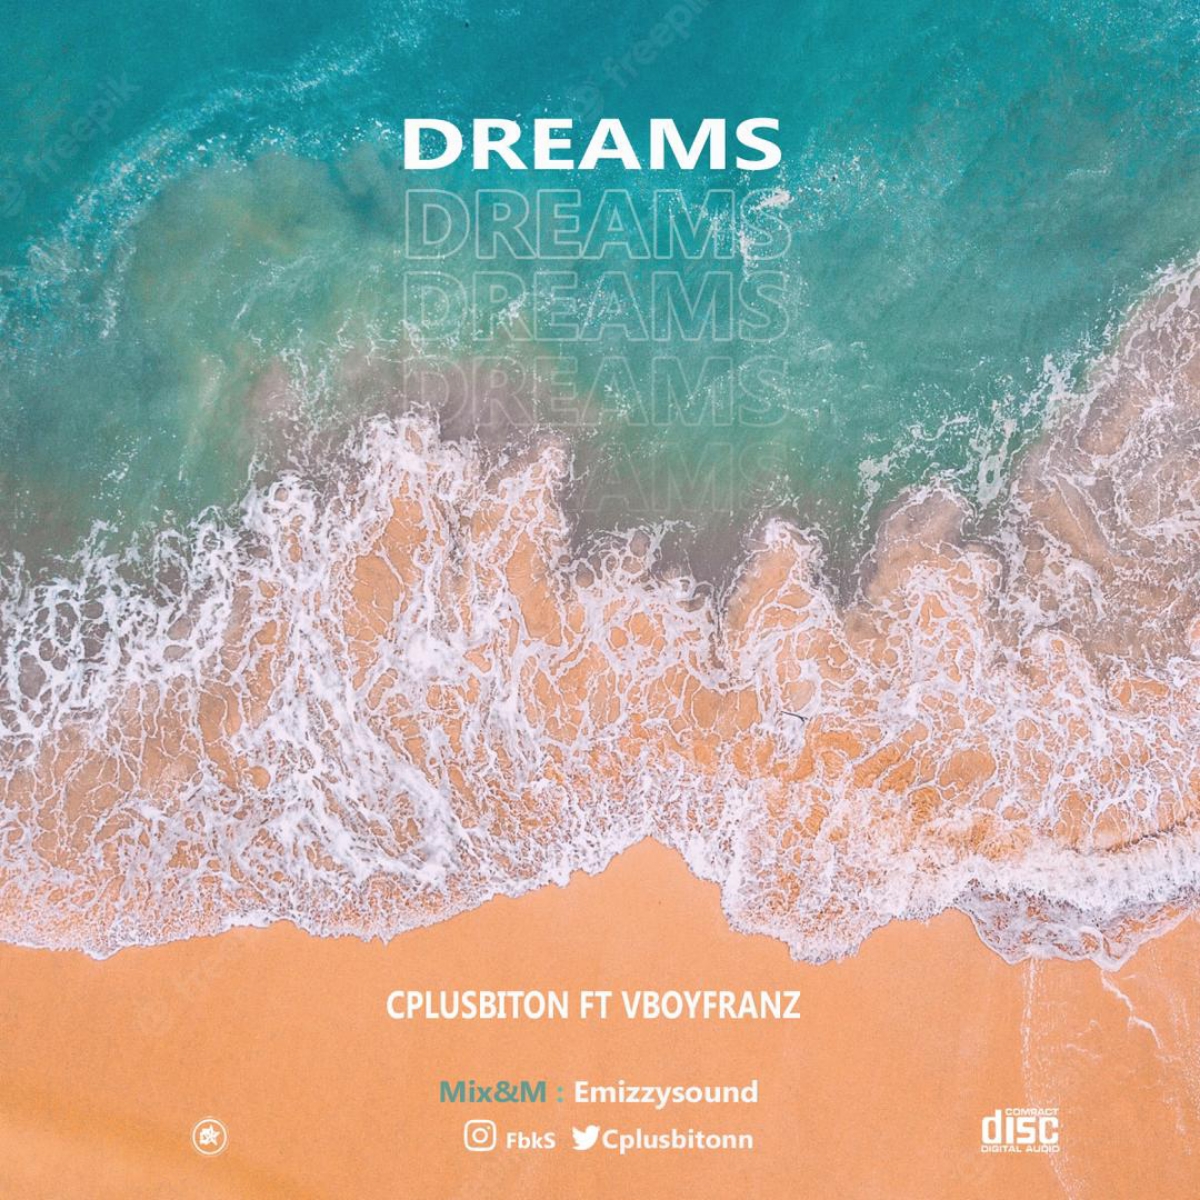 Cplusbiton -“Dreams” Feat Vboyfranz